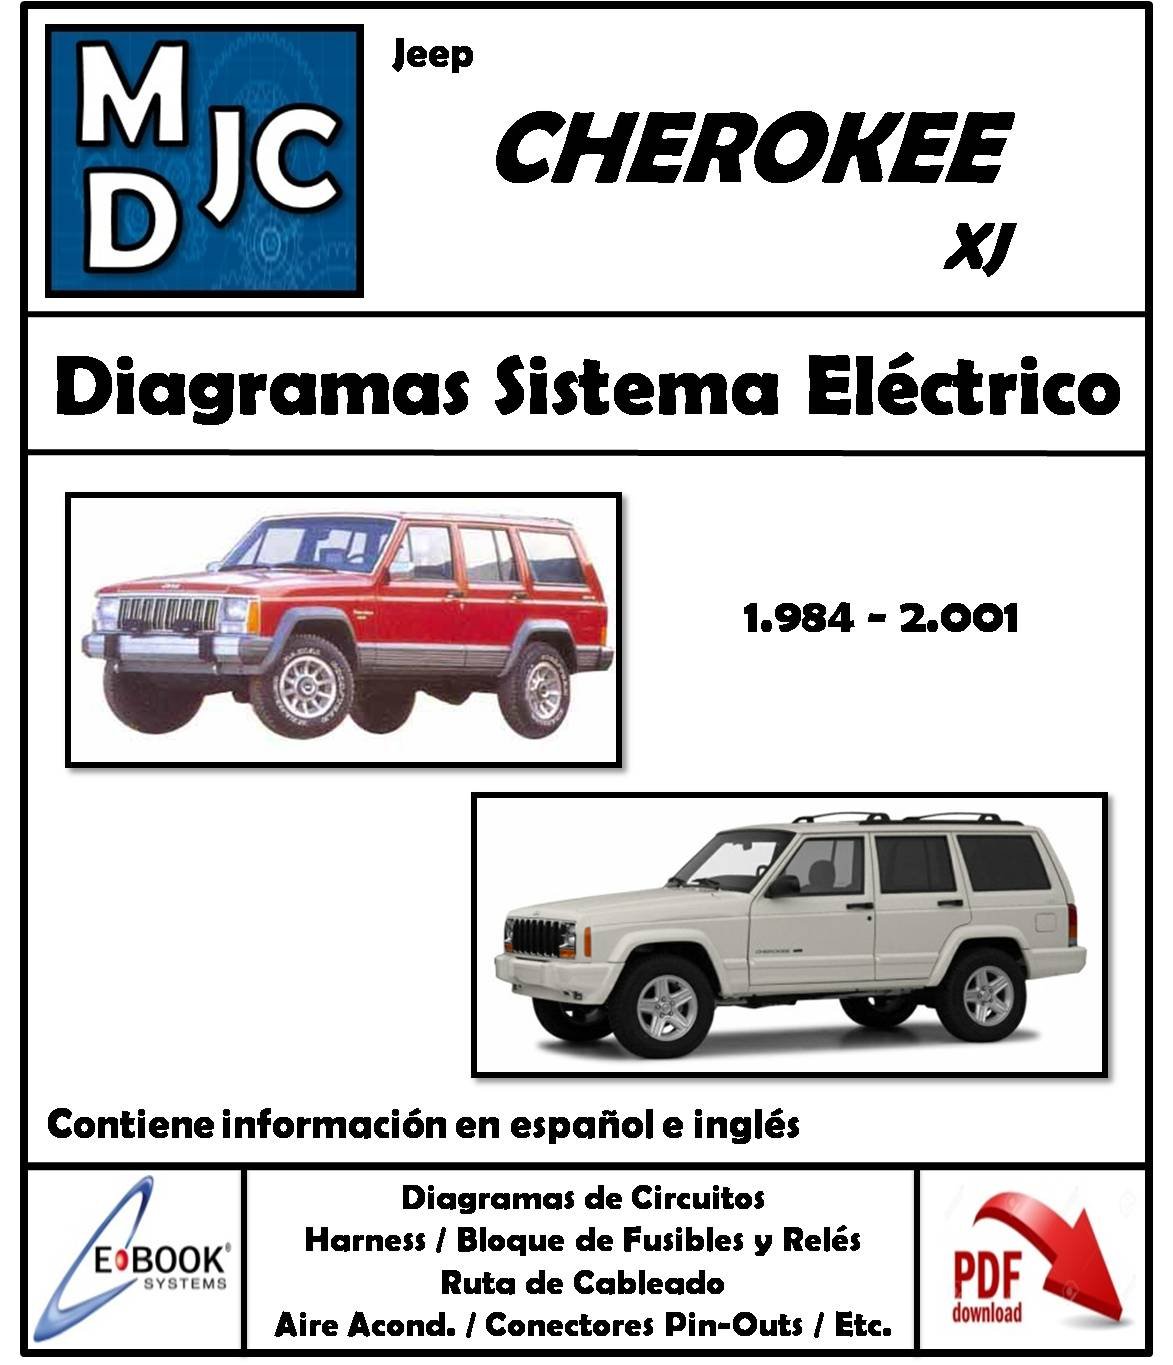 Diagramas de Cableado Sistema Eléctrico Jeep Jeep Cherokee ( XJ ) 1984 - 2001